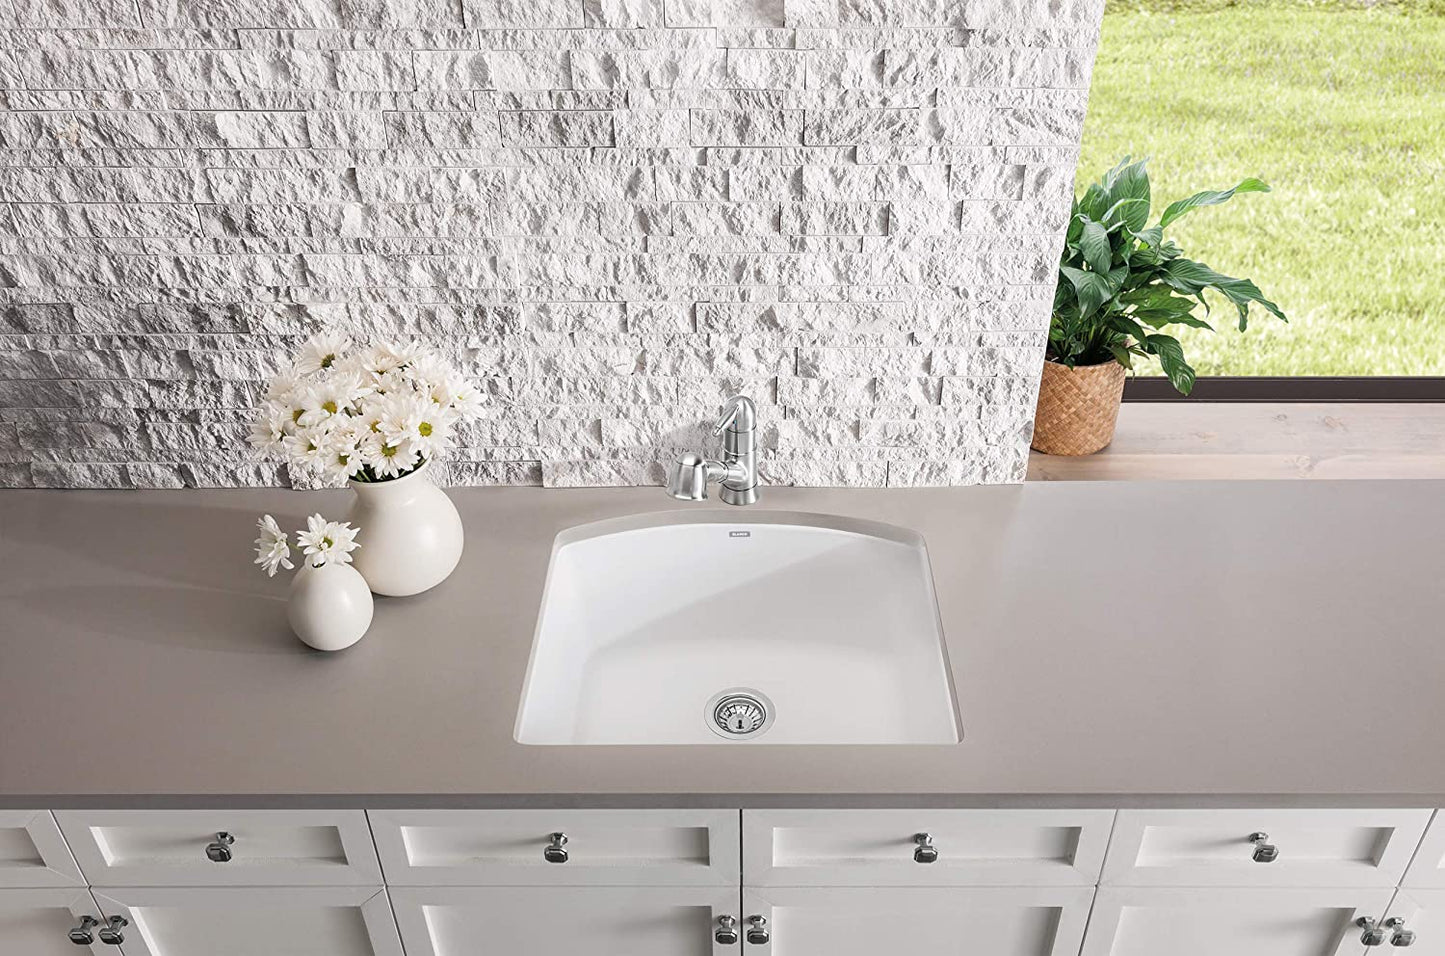 24" Diamond Single Bowl Undermount Kitchen Sink - White